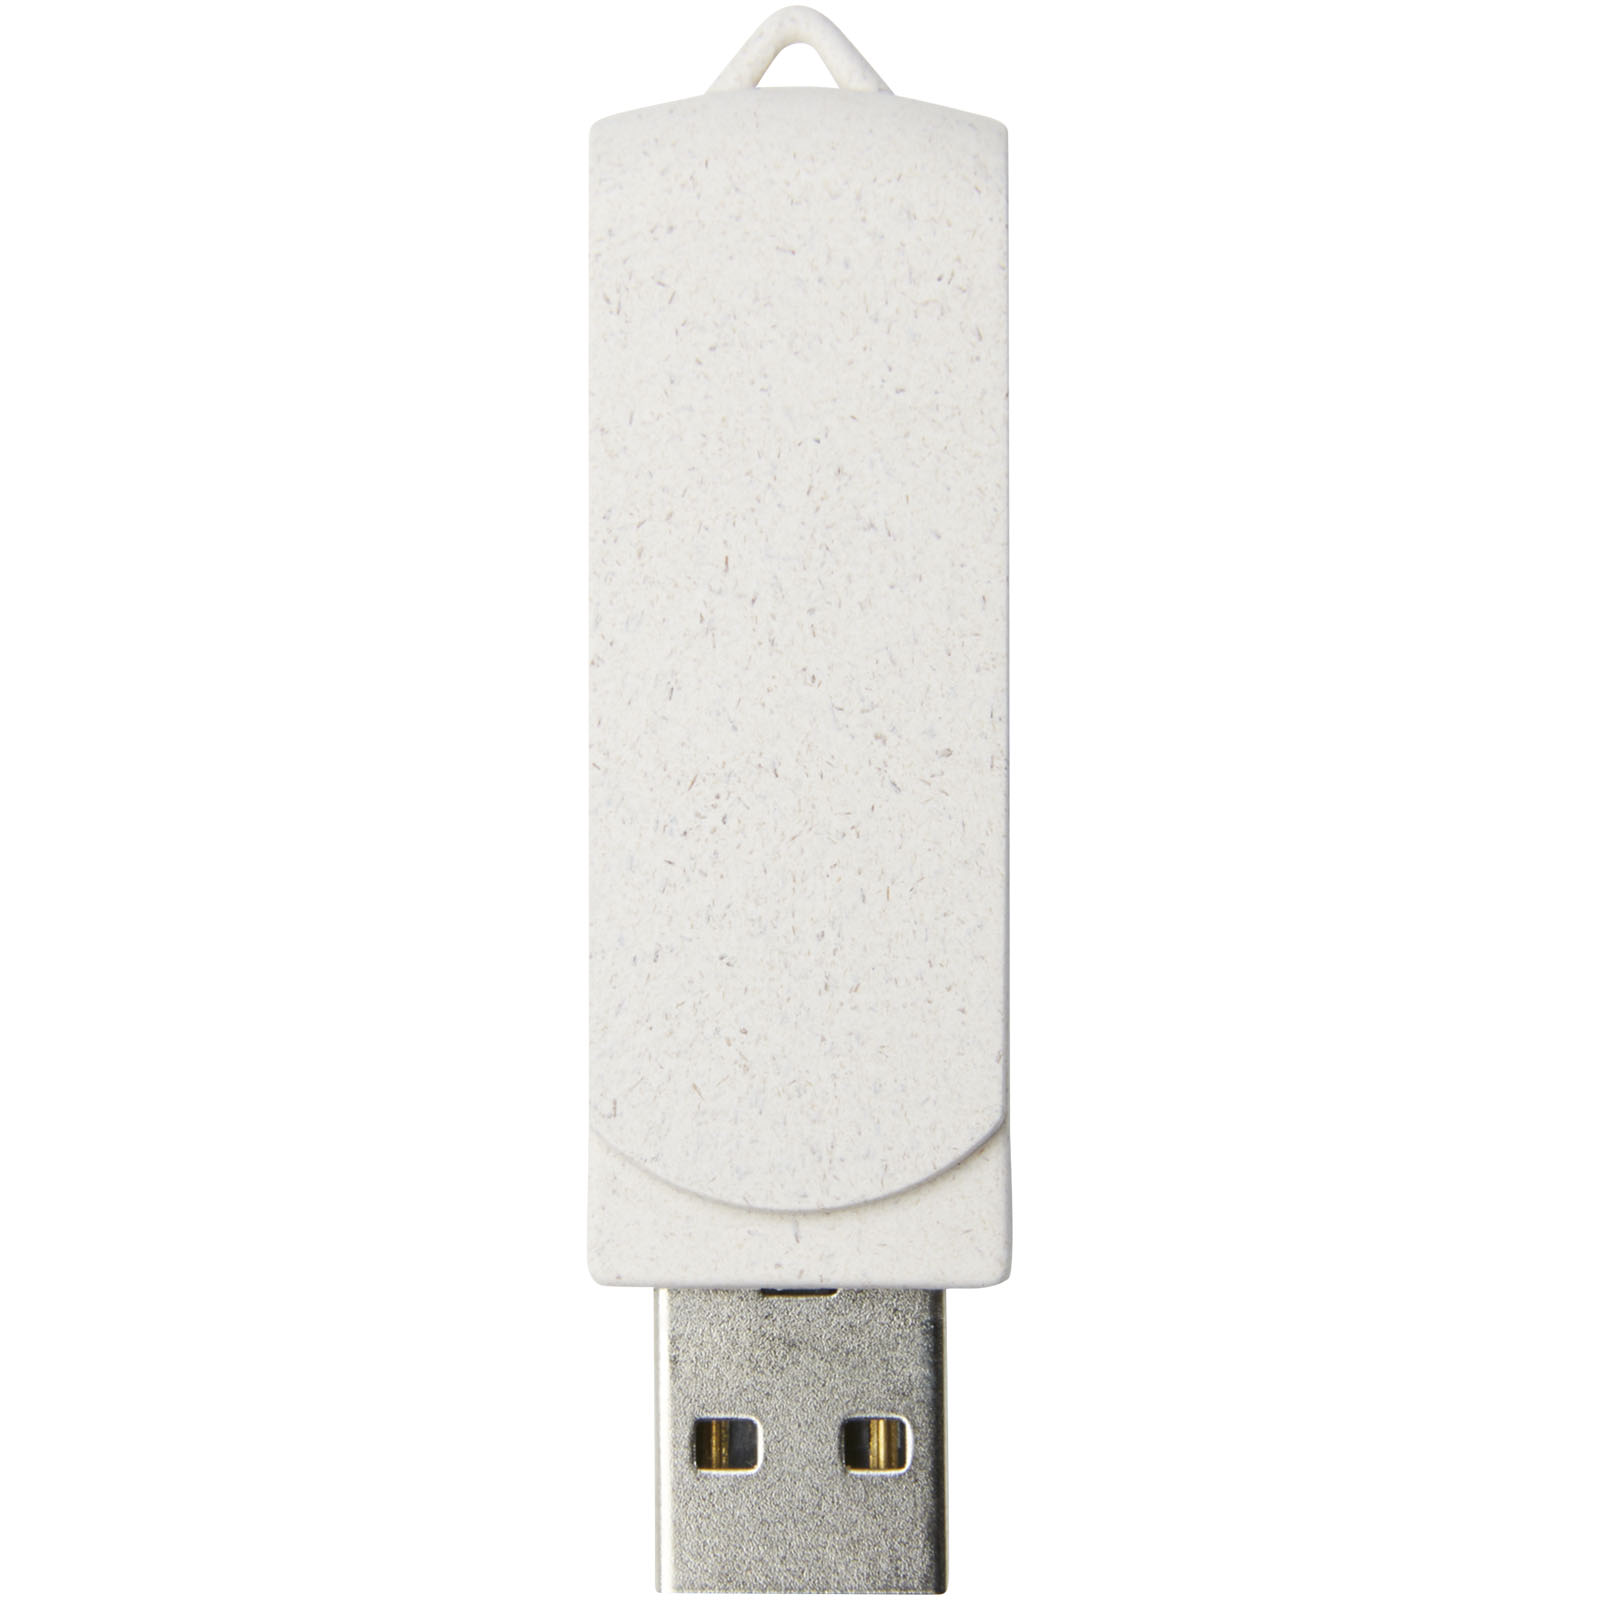 Clés USB publicitaires - Clé USB Rotate 4 Go en paille de blé - 1